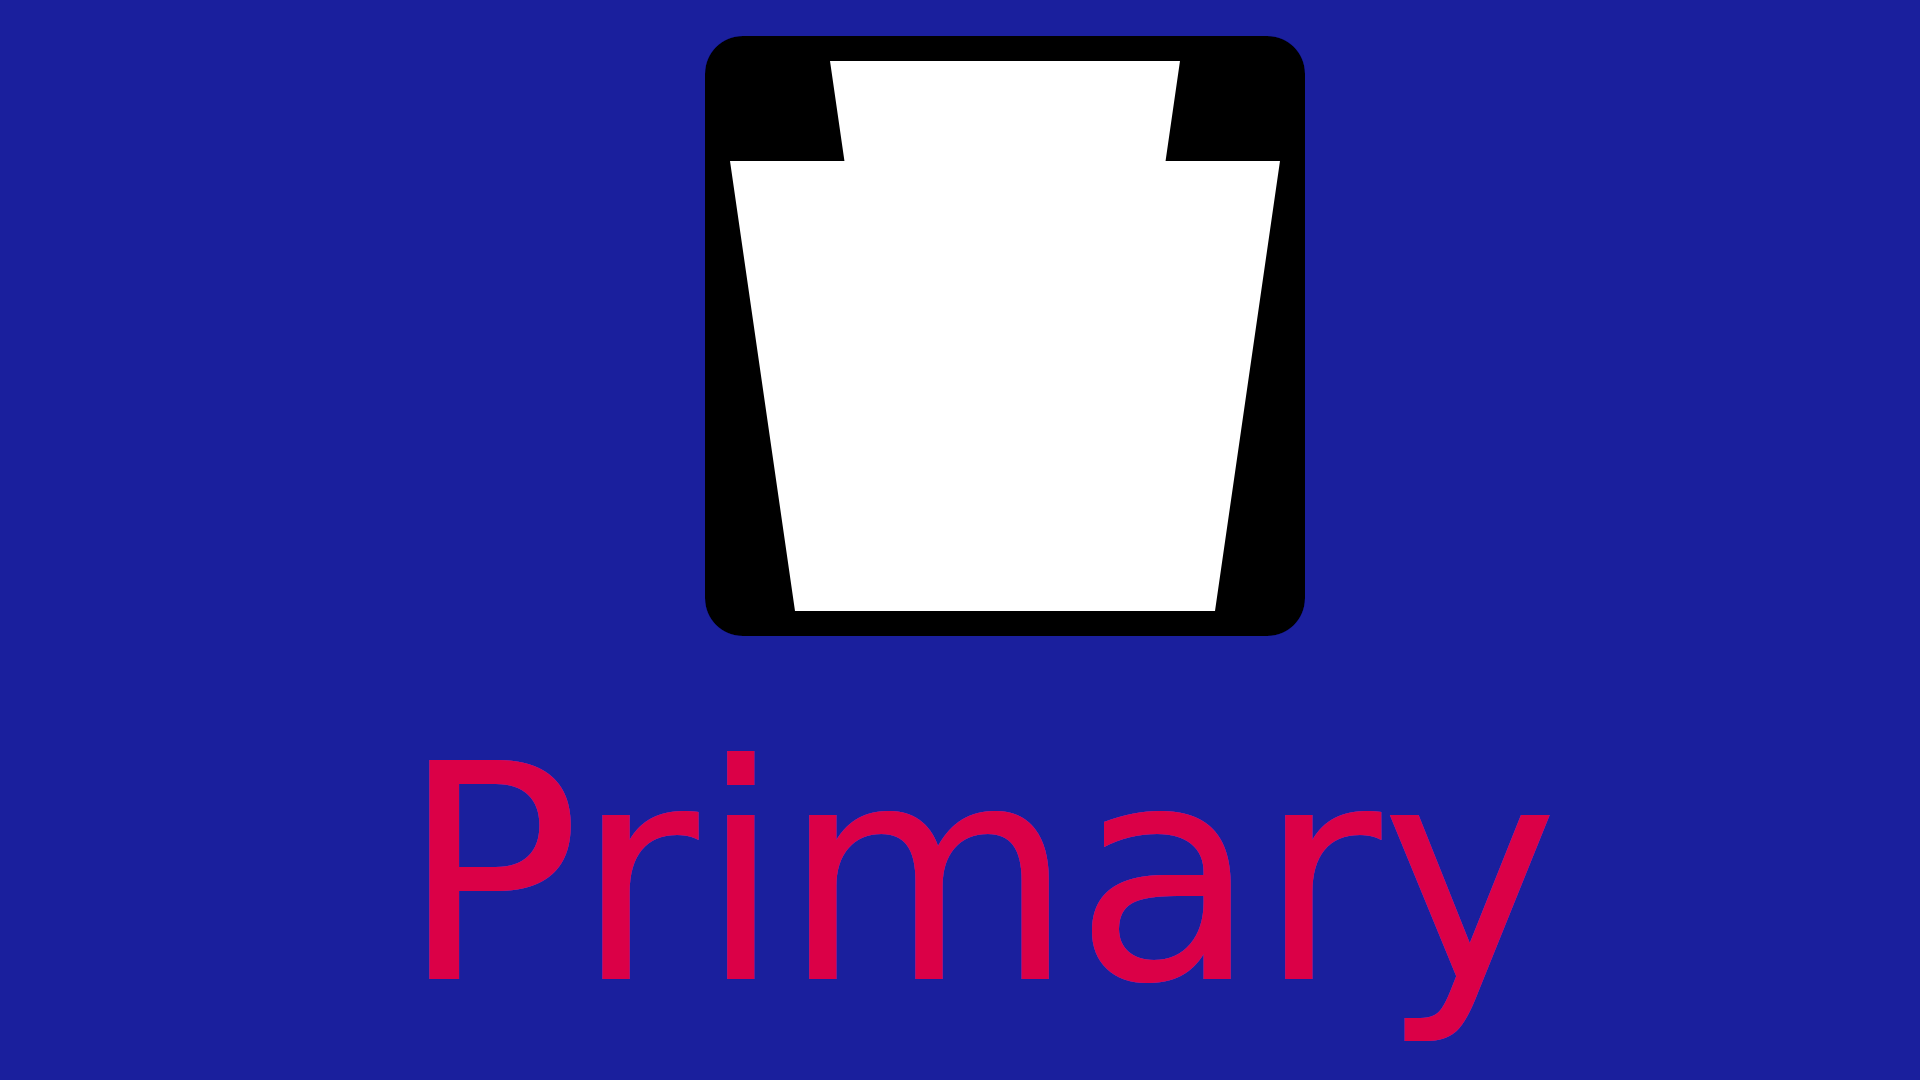 Pennsylvania primary